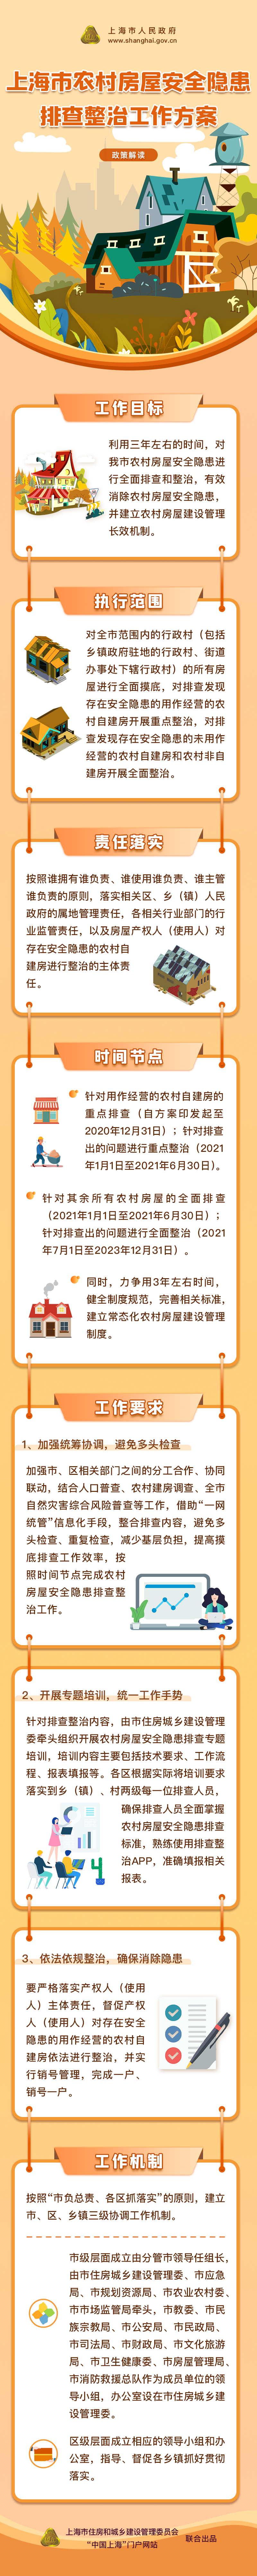 一图读懂《上海市农村房屋安全隐患排查整治工作方案》.png